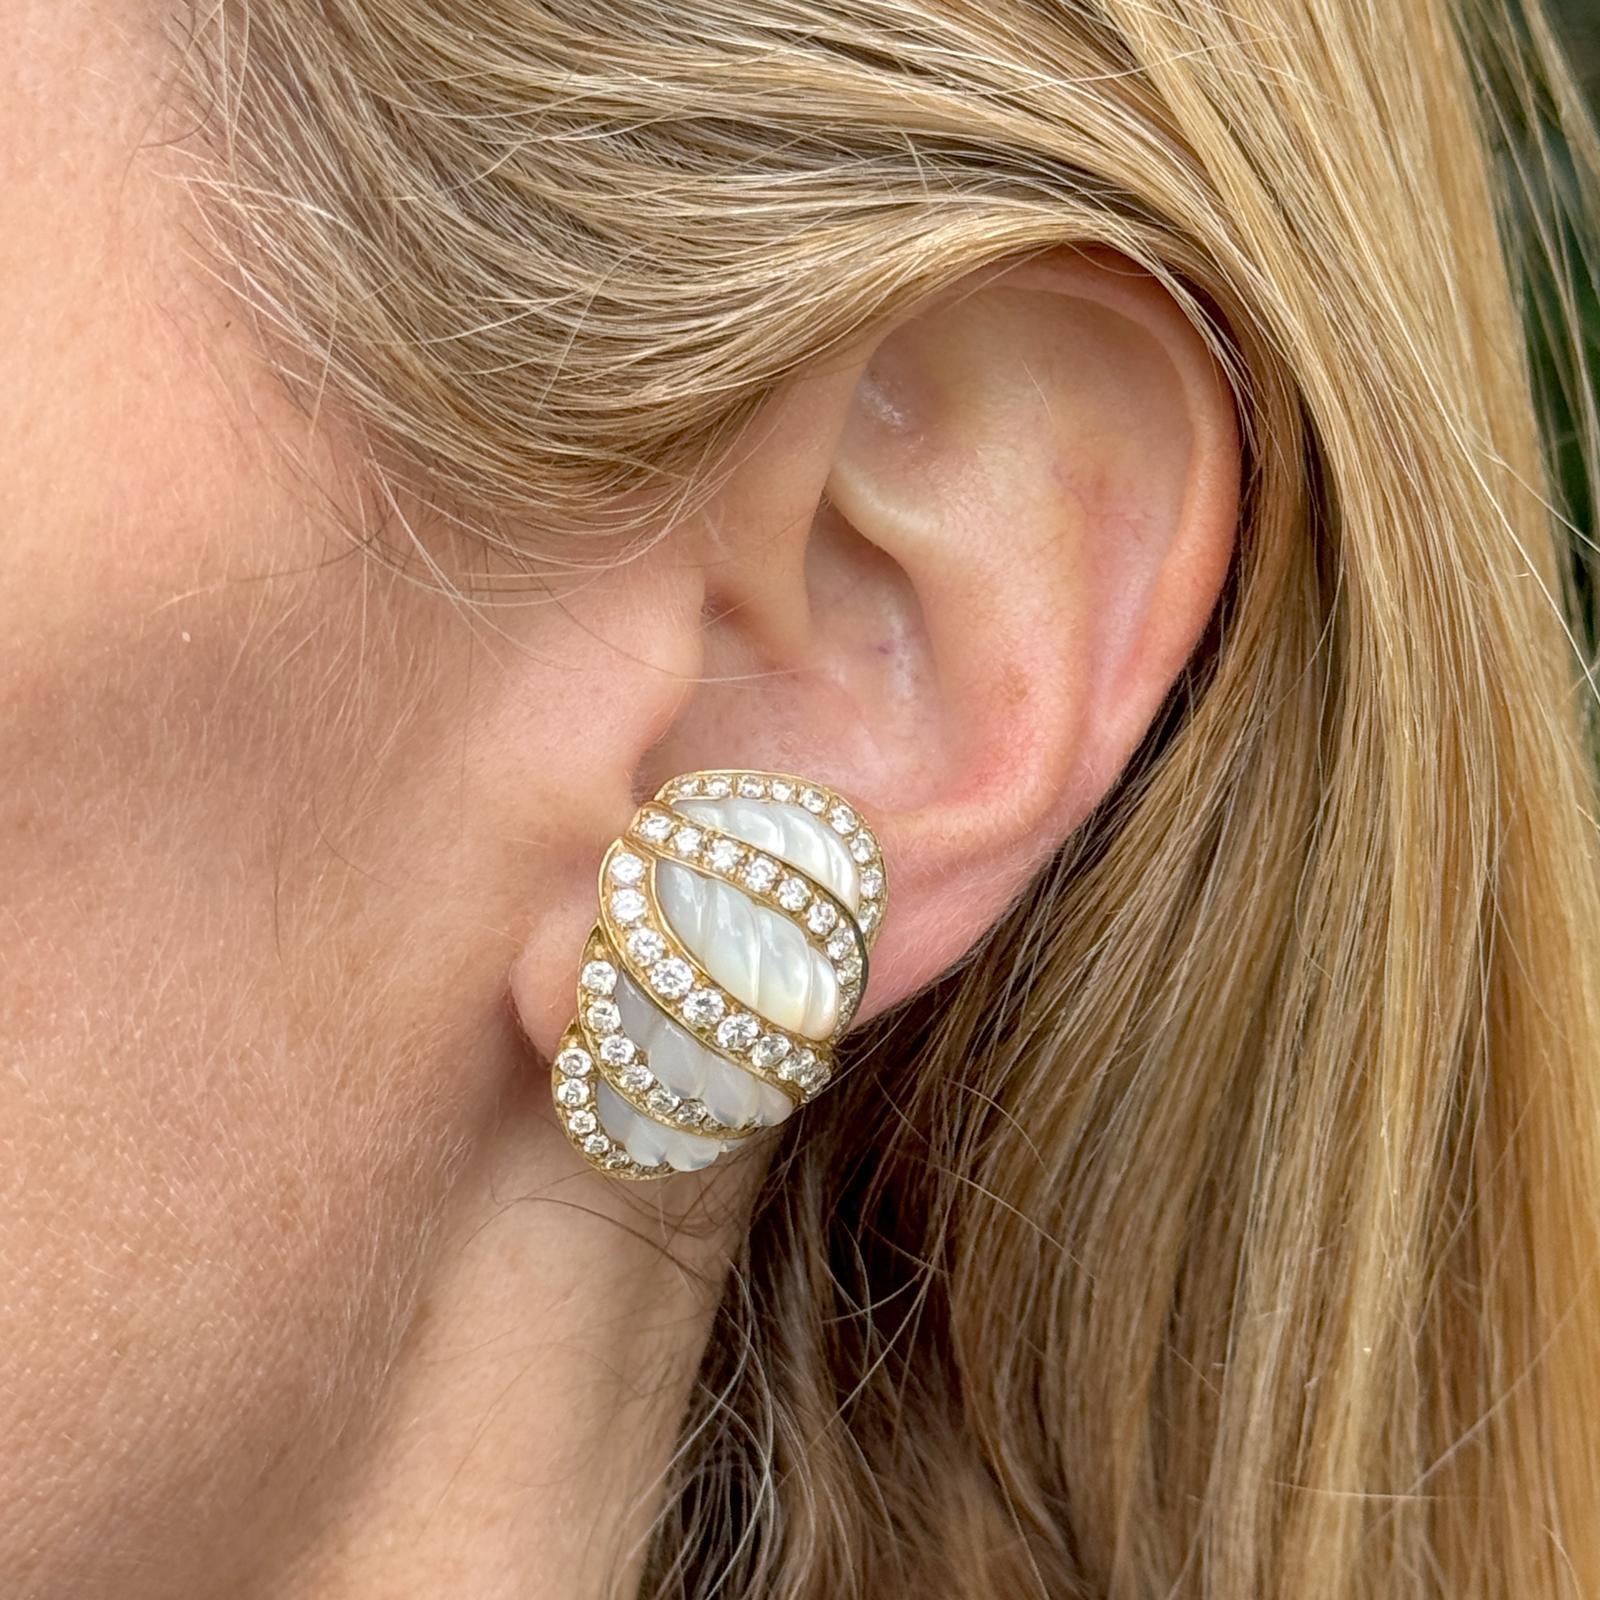 Elégantes boucles d'oreilles italiennes en diamant et nacre sculptée, réalisées à la main en or jaune 18 carats. Les boucles d'oreilles de style crevette sont ornées de 98 diamants ronds de taille brillant pesant environ 5,00 carats au total et